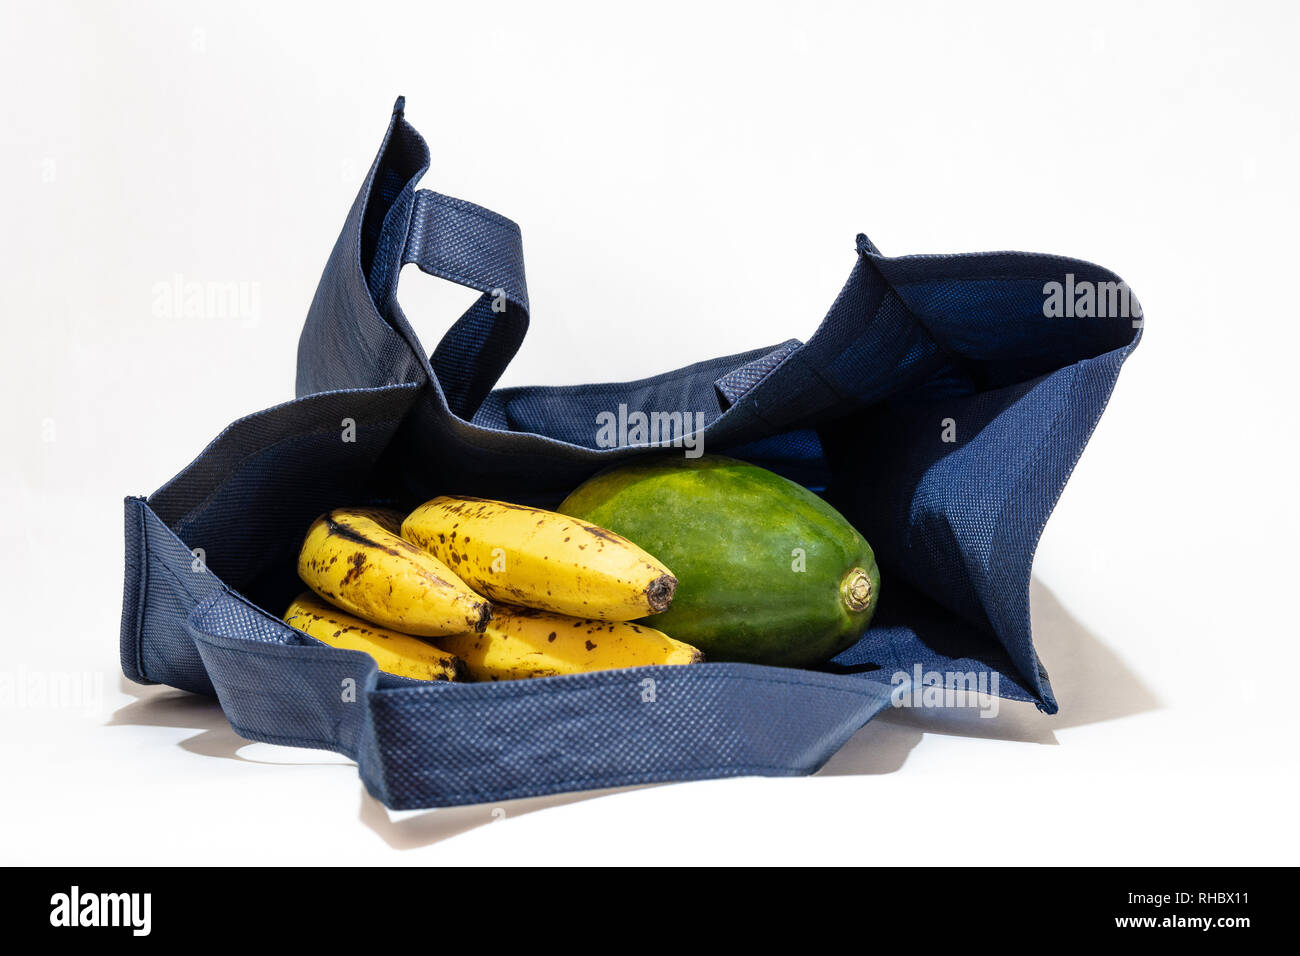 Wiederverwendbare Shopping/grocery Bag mit Früchten auf weißem Hintergrund Stockfoto